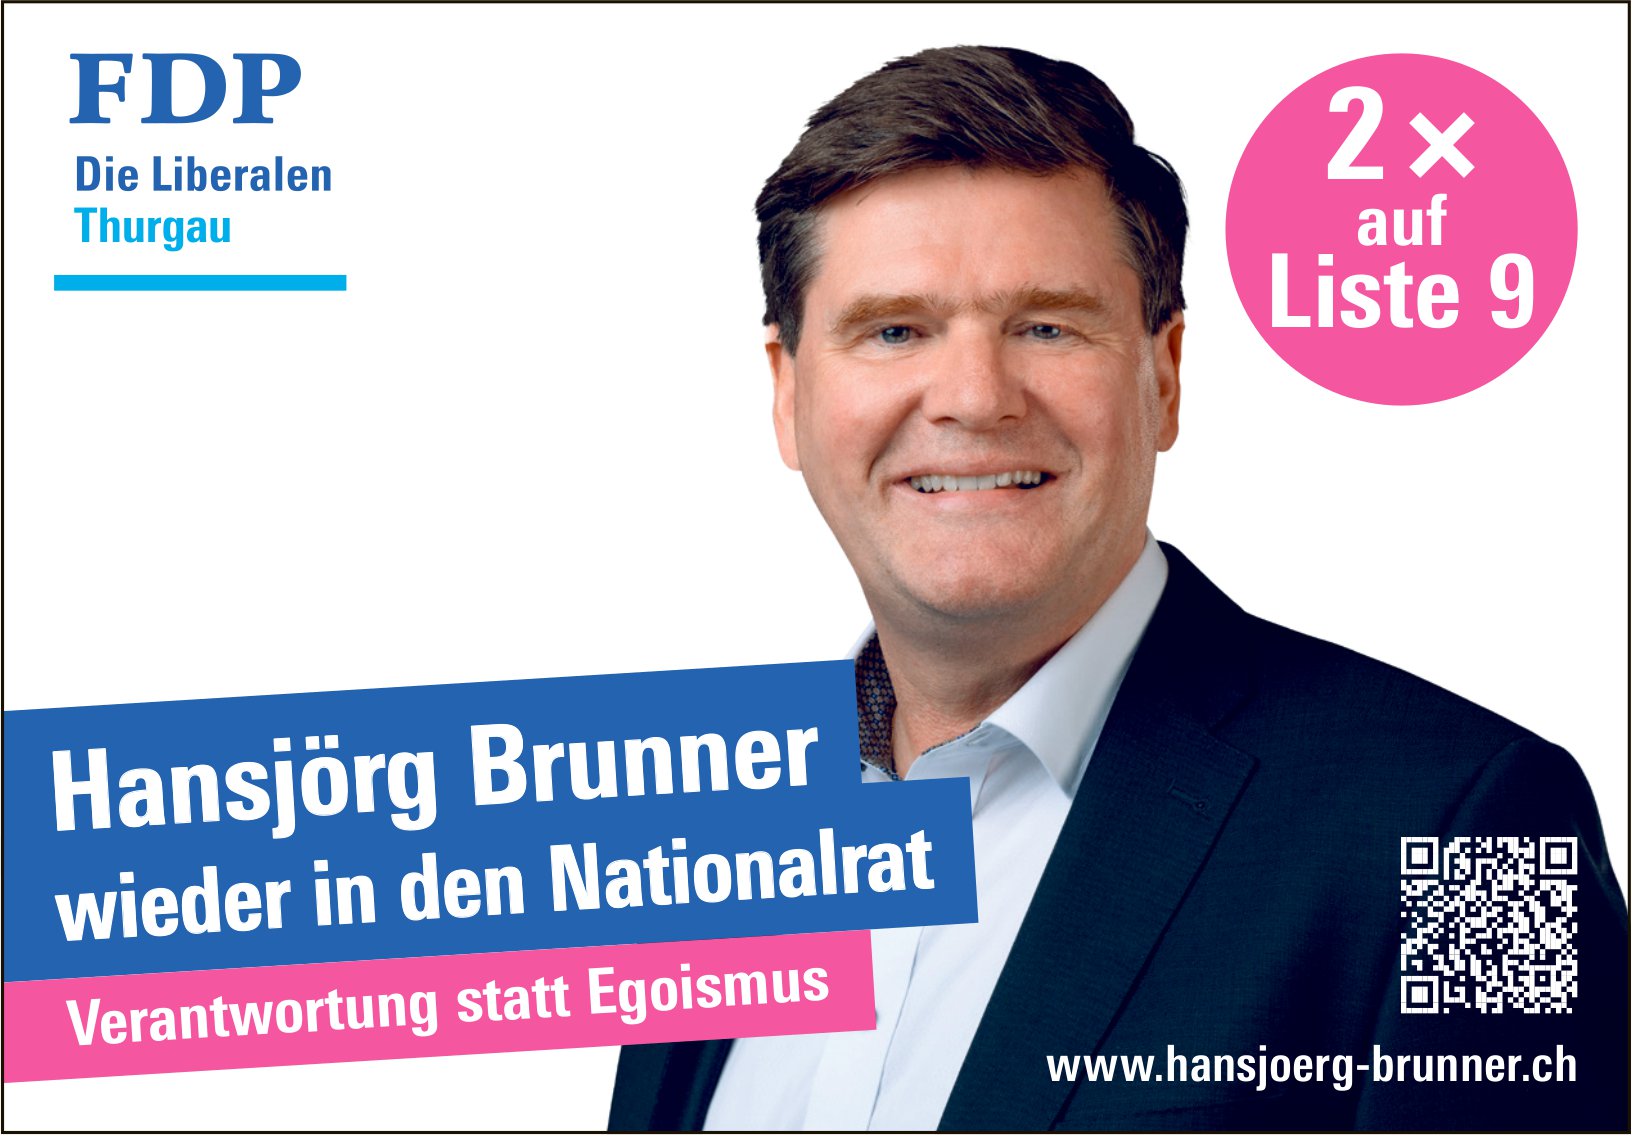 FDP, Hansjörg Brunner